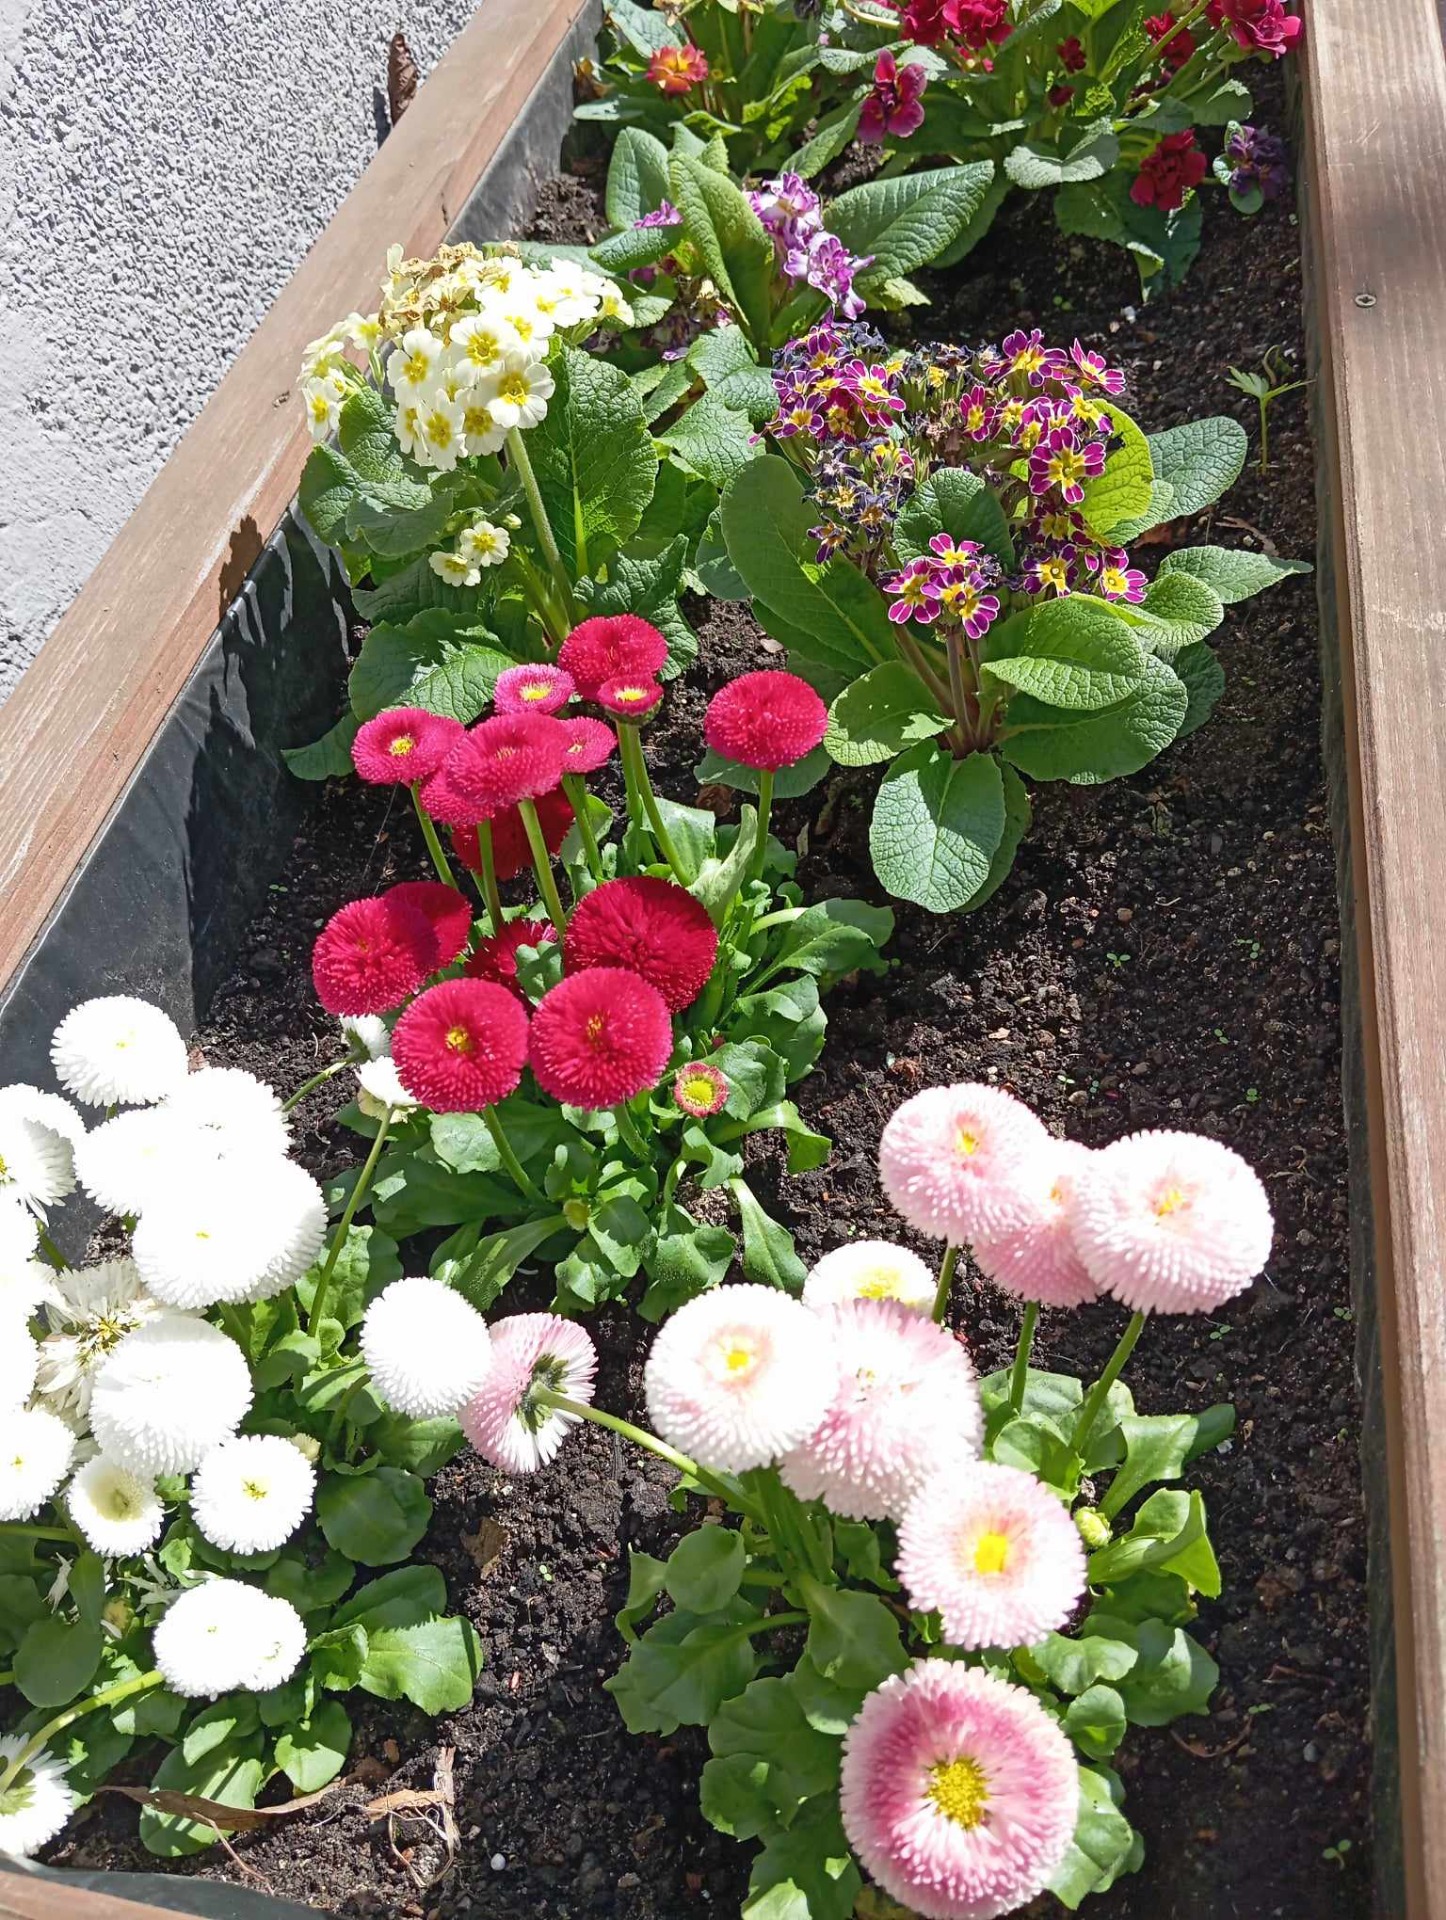 W drewnianej donicy wystawionej przed wejściem do szkoły rosną białe i różowe kwiaty. To szkolny ogródek.